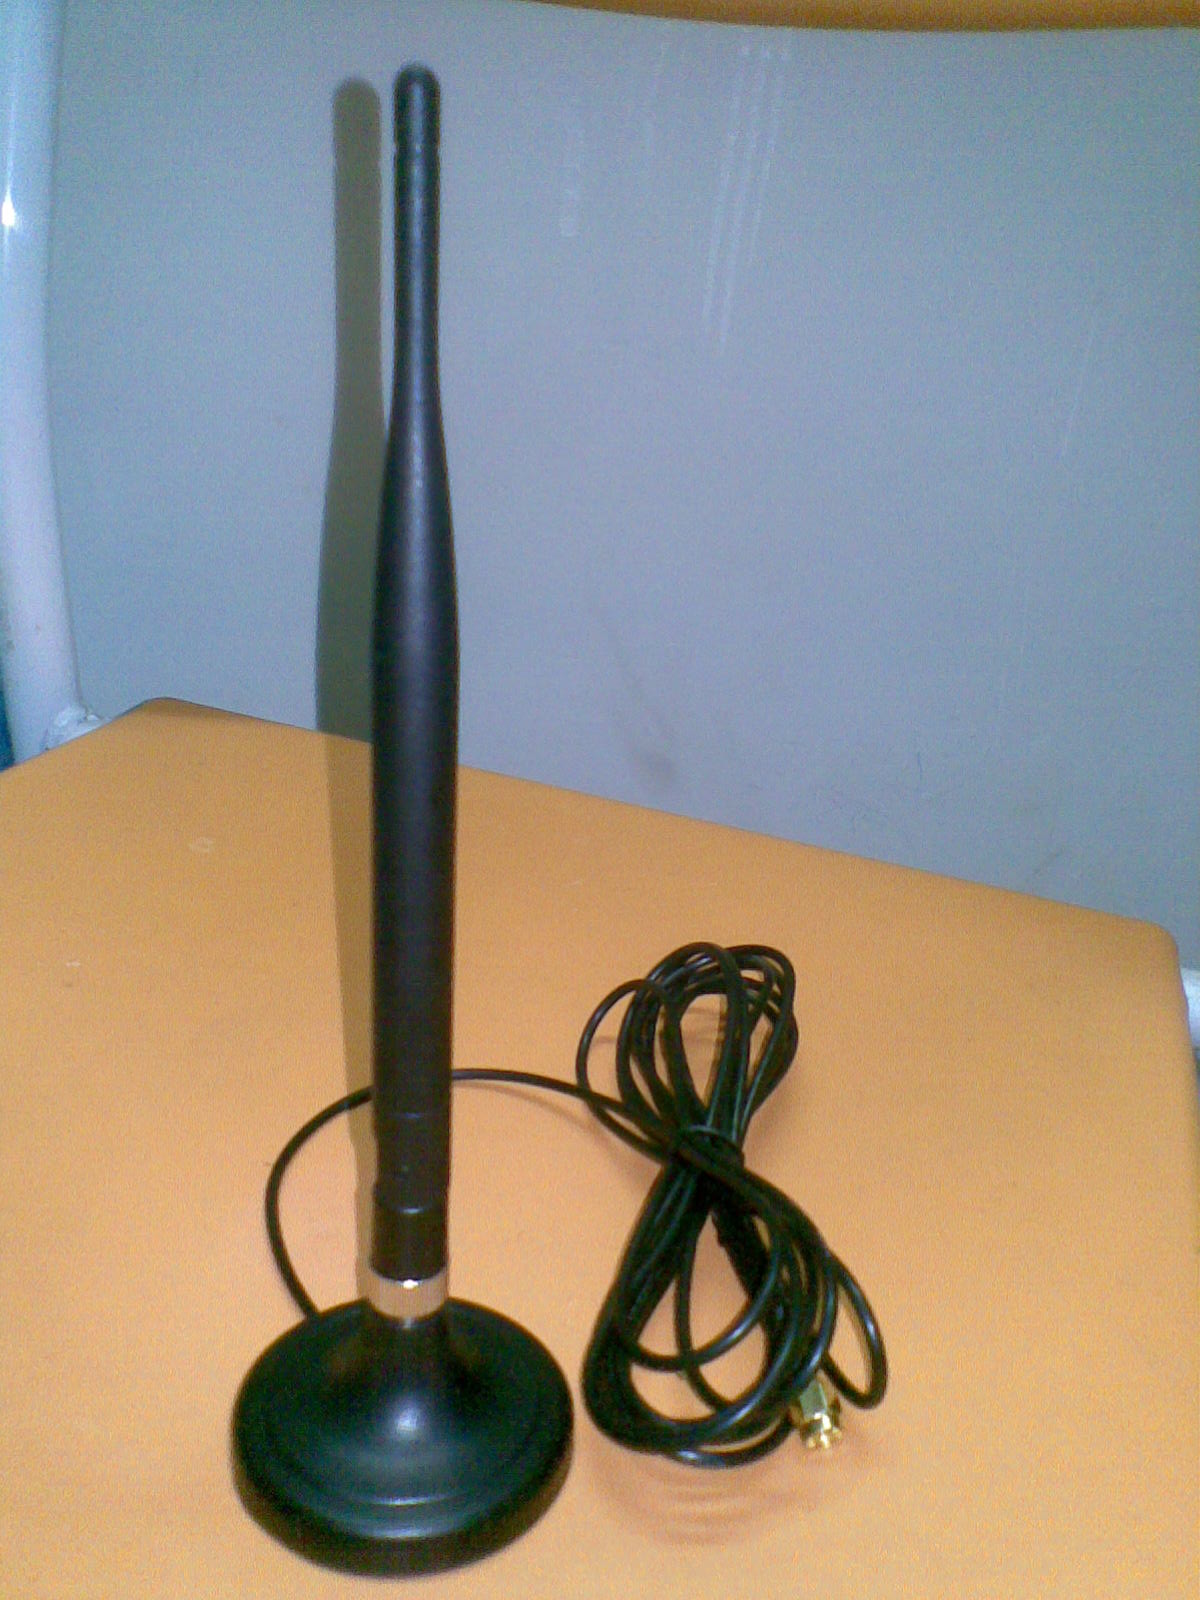 Indoor Chuck TV Antenna_FEIYIXUN Communication Equipment Co., Ltd.